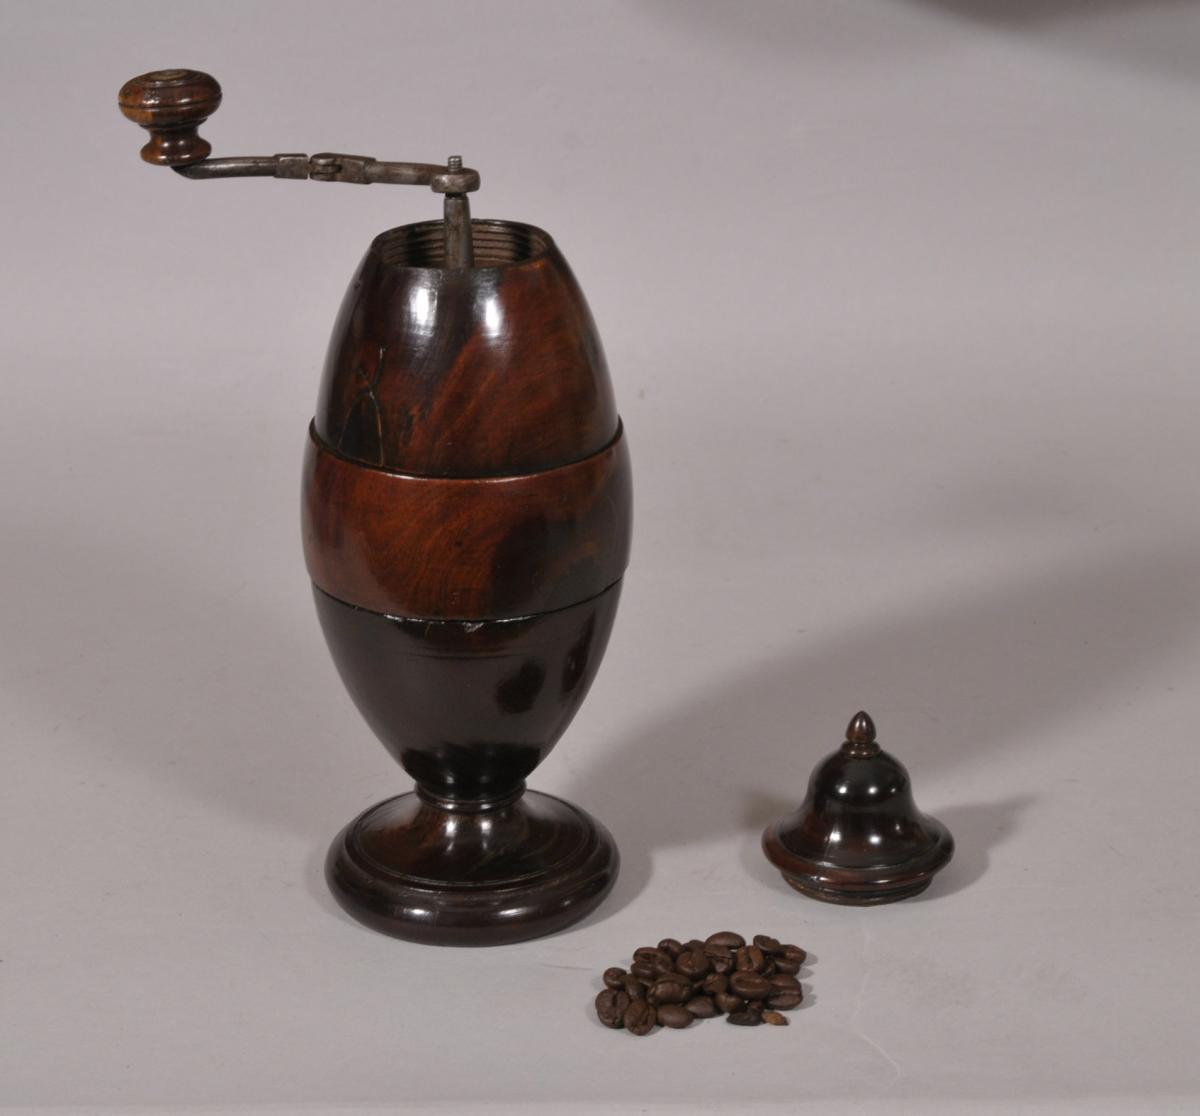 S/4907 Antique Treen 19th Century Lignum Vitae Coffee Grinder